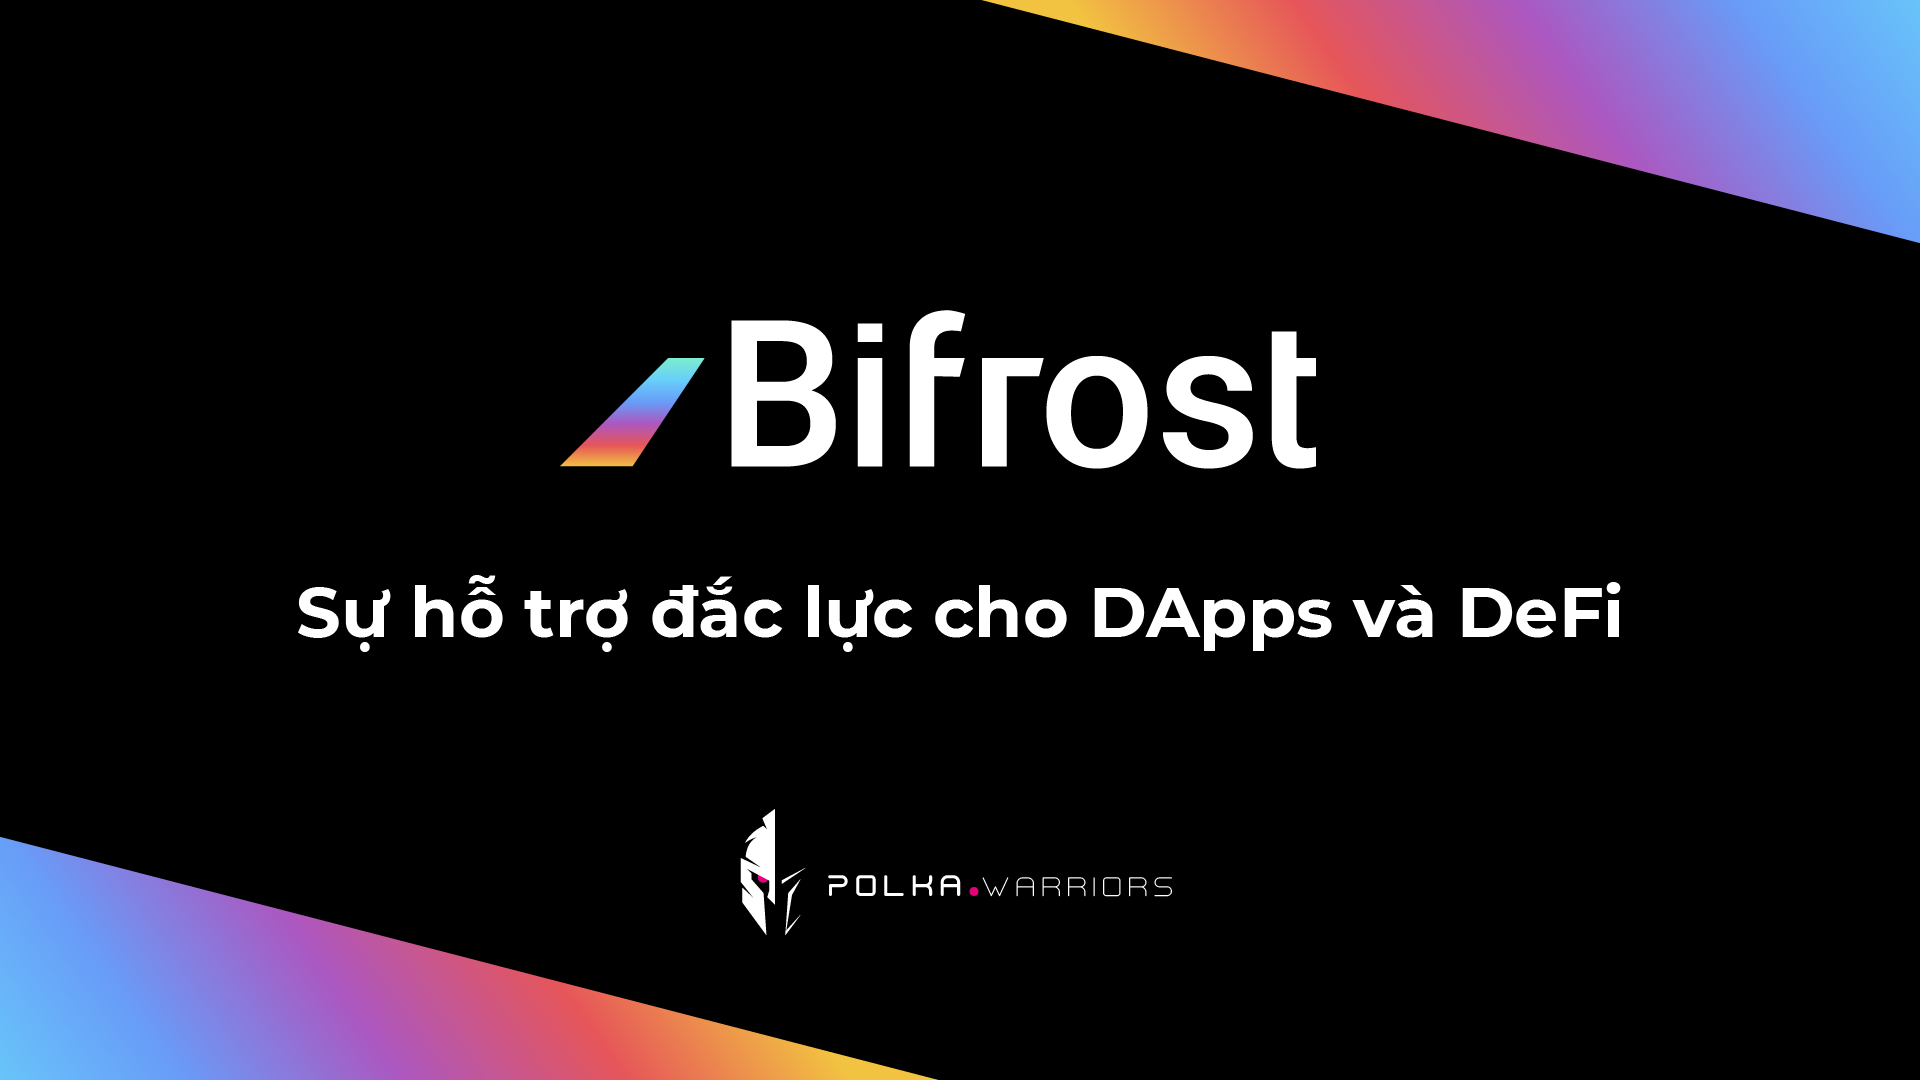 BiFrost: Sự hỗ trợ đắc lực cho DApps và DeFi - Syndicator